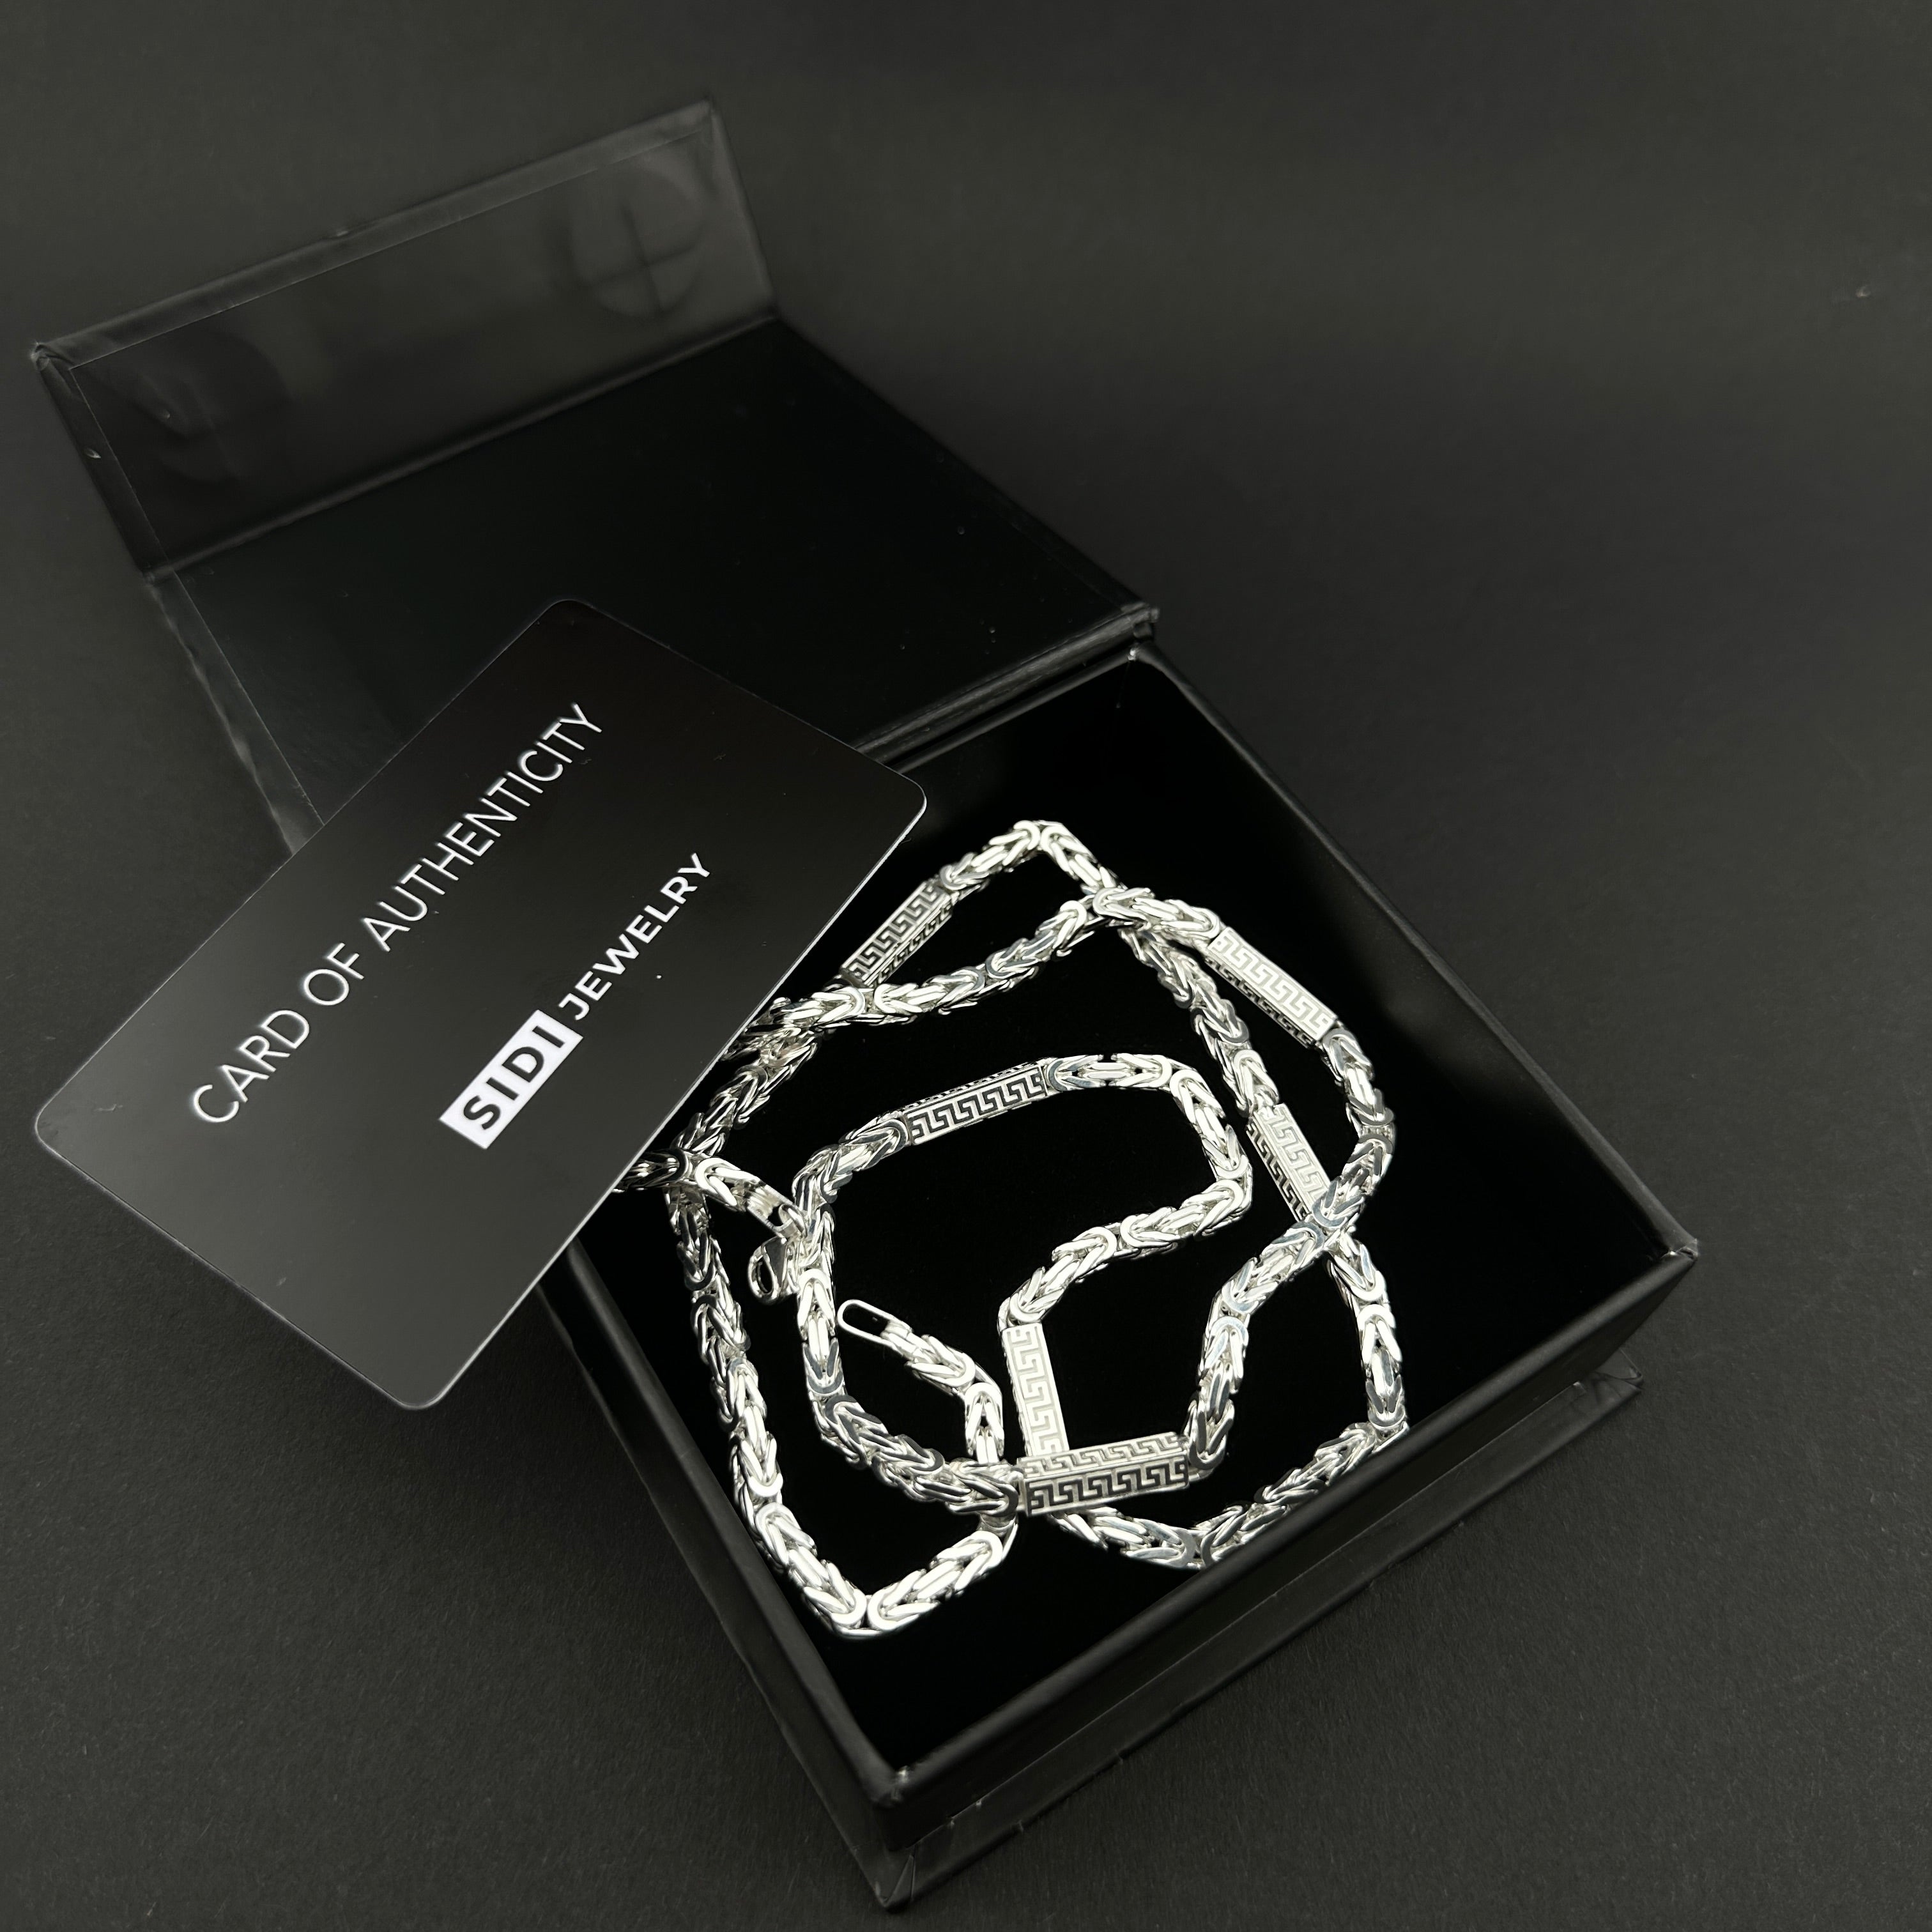 Greek Königskette - 4mm breit - Silber 925